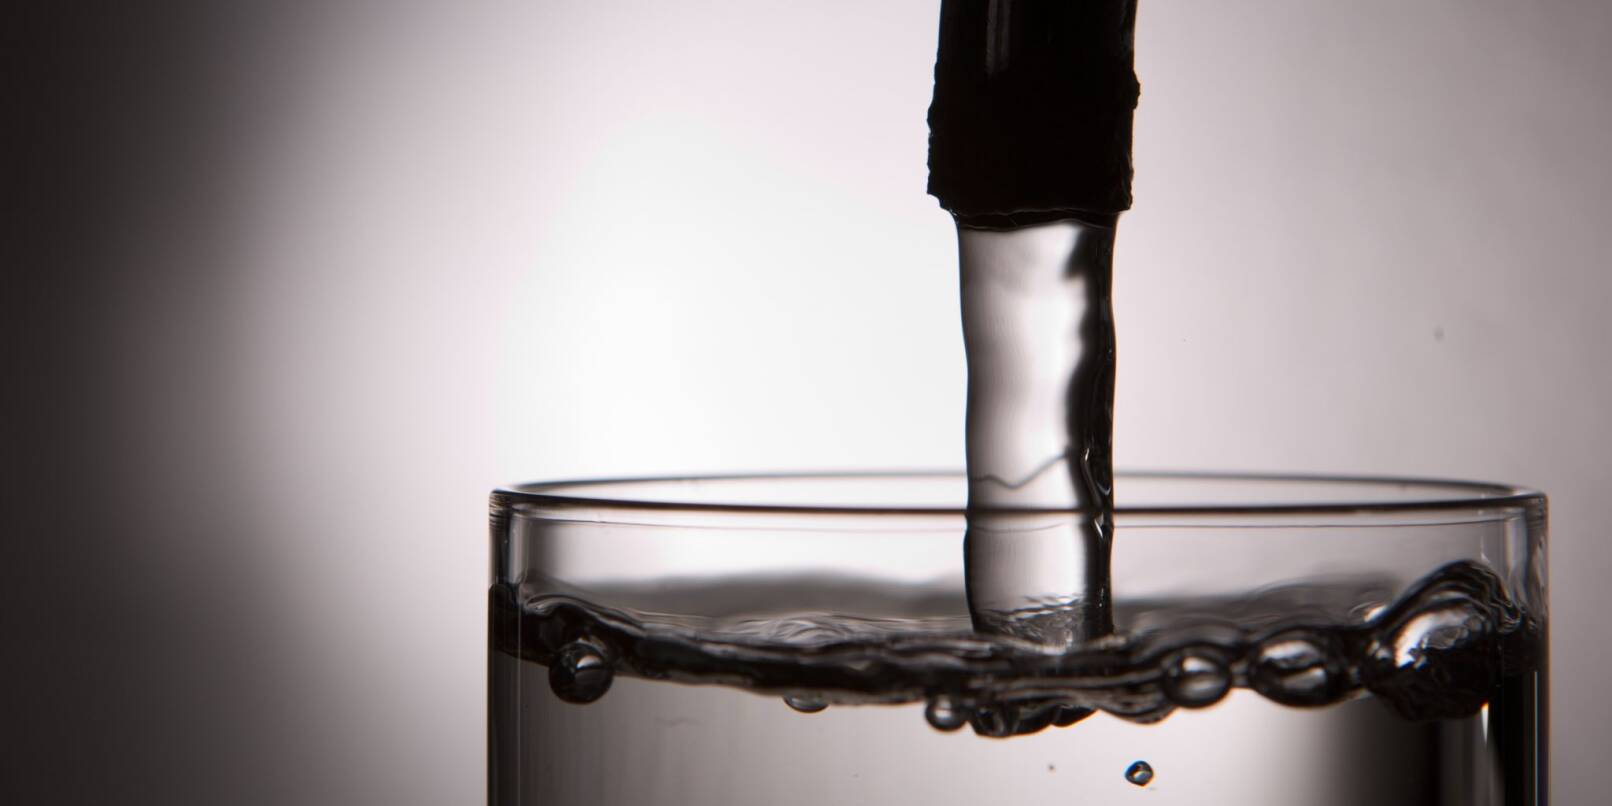 Leitungswasser läuft aus einem Wasserhahn in ein Glas.